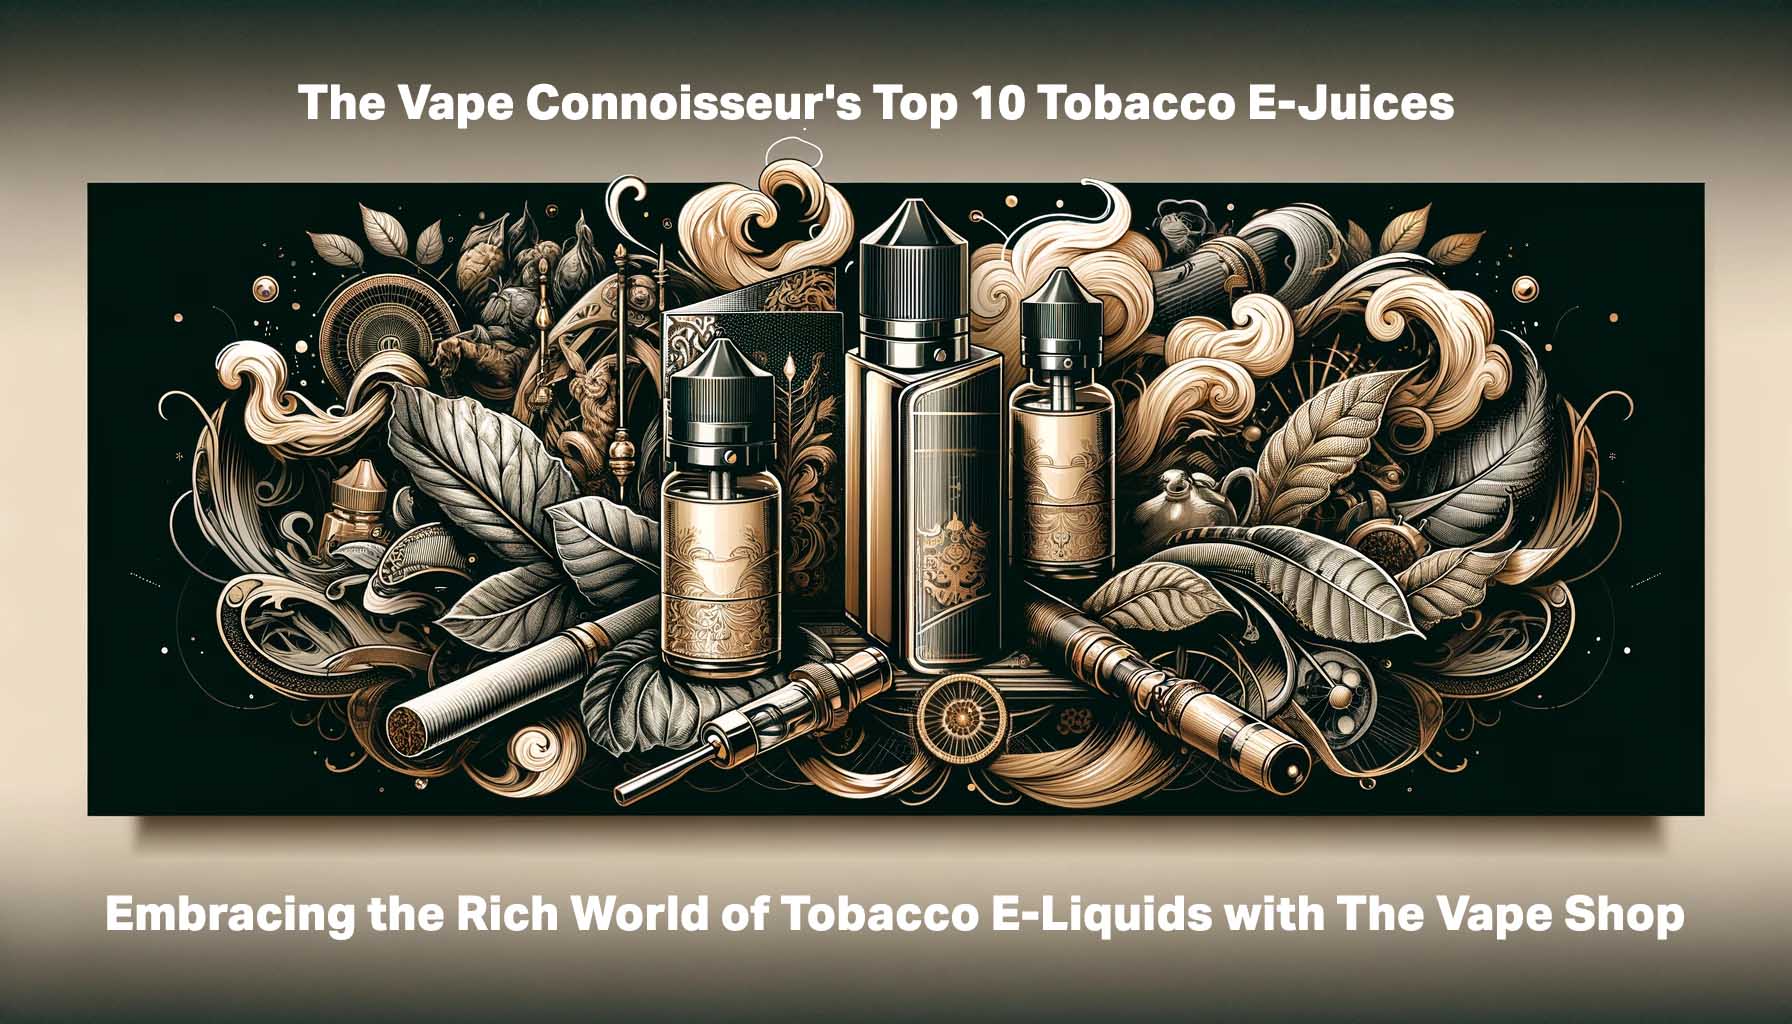 The Vape Connoisseur's Top 10 Tobacco E-Juices